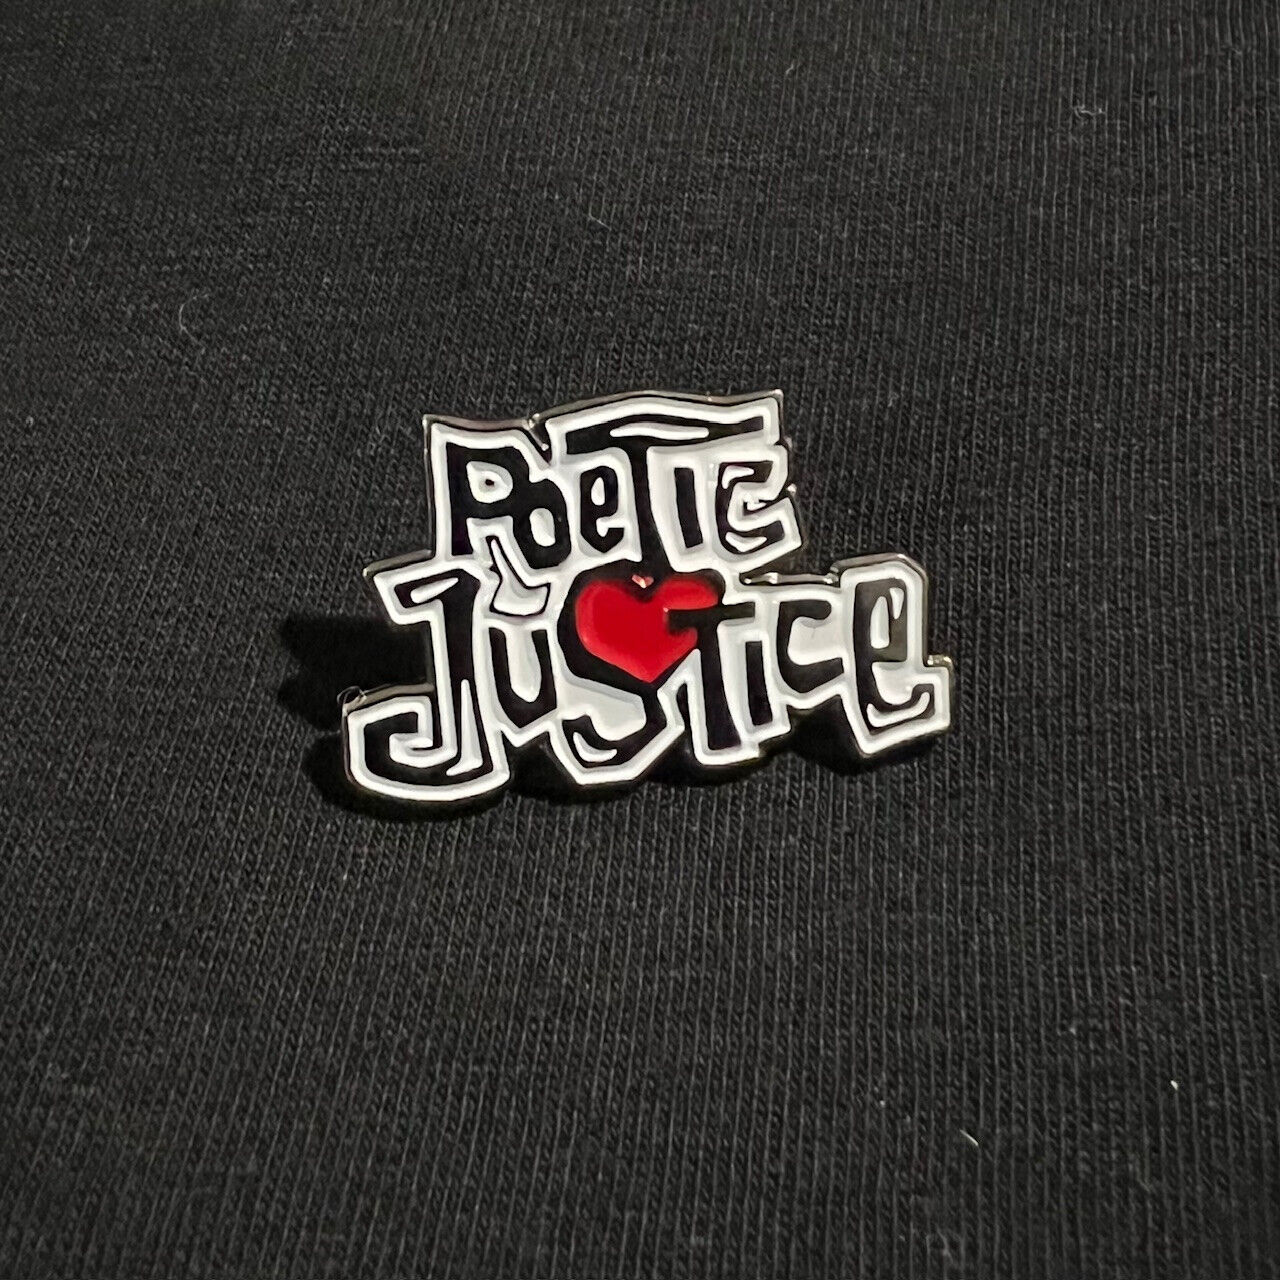 Poetic Justice Enamel Pin - 90's Movie - Tupac - Janet Jackson 2pac Shakur Juice